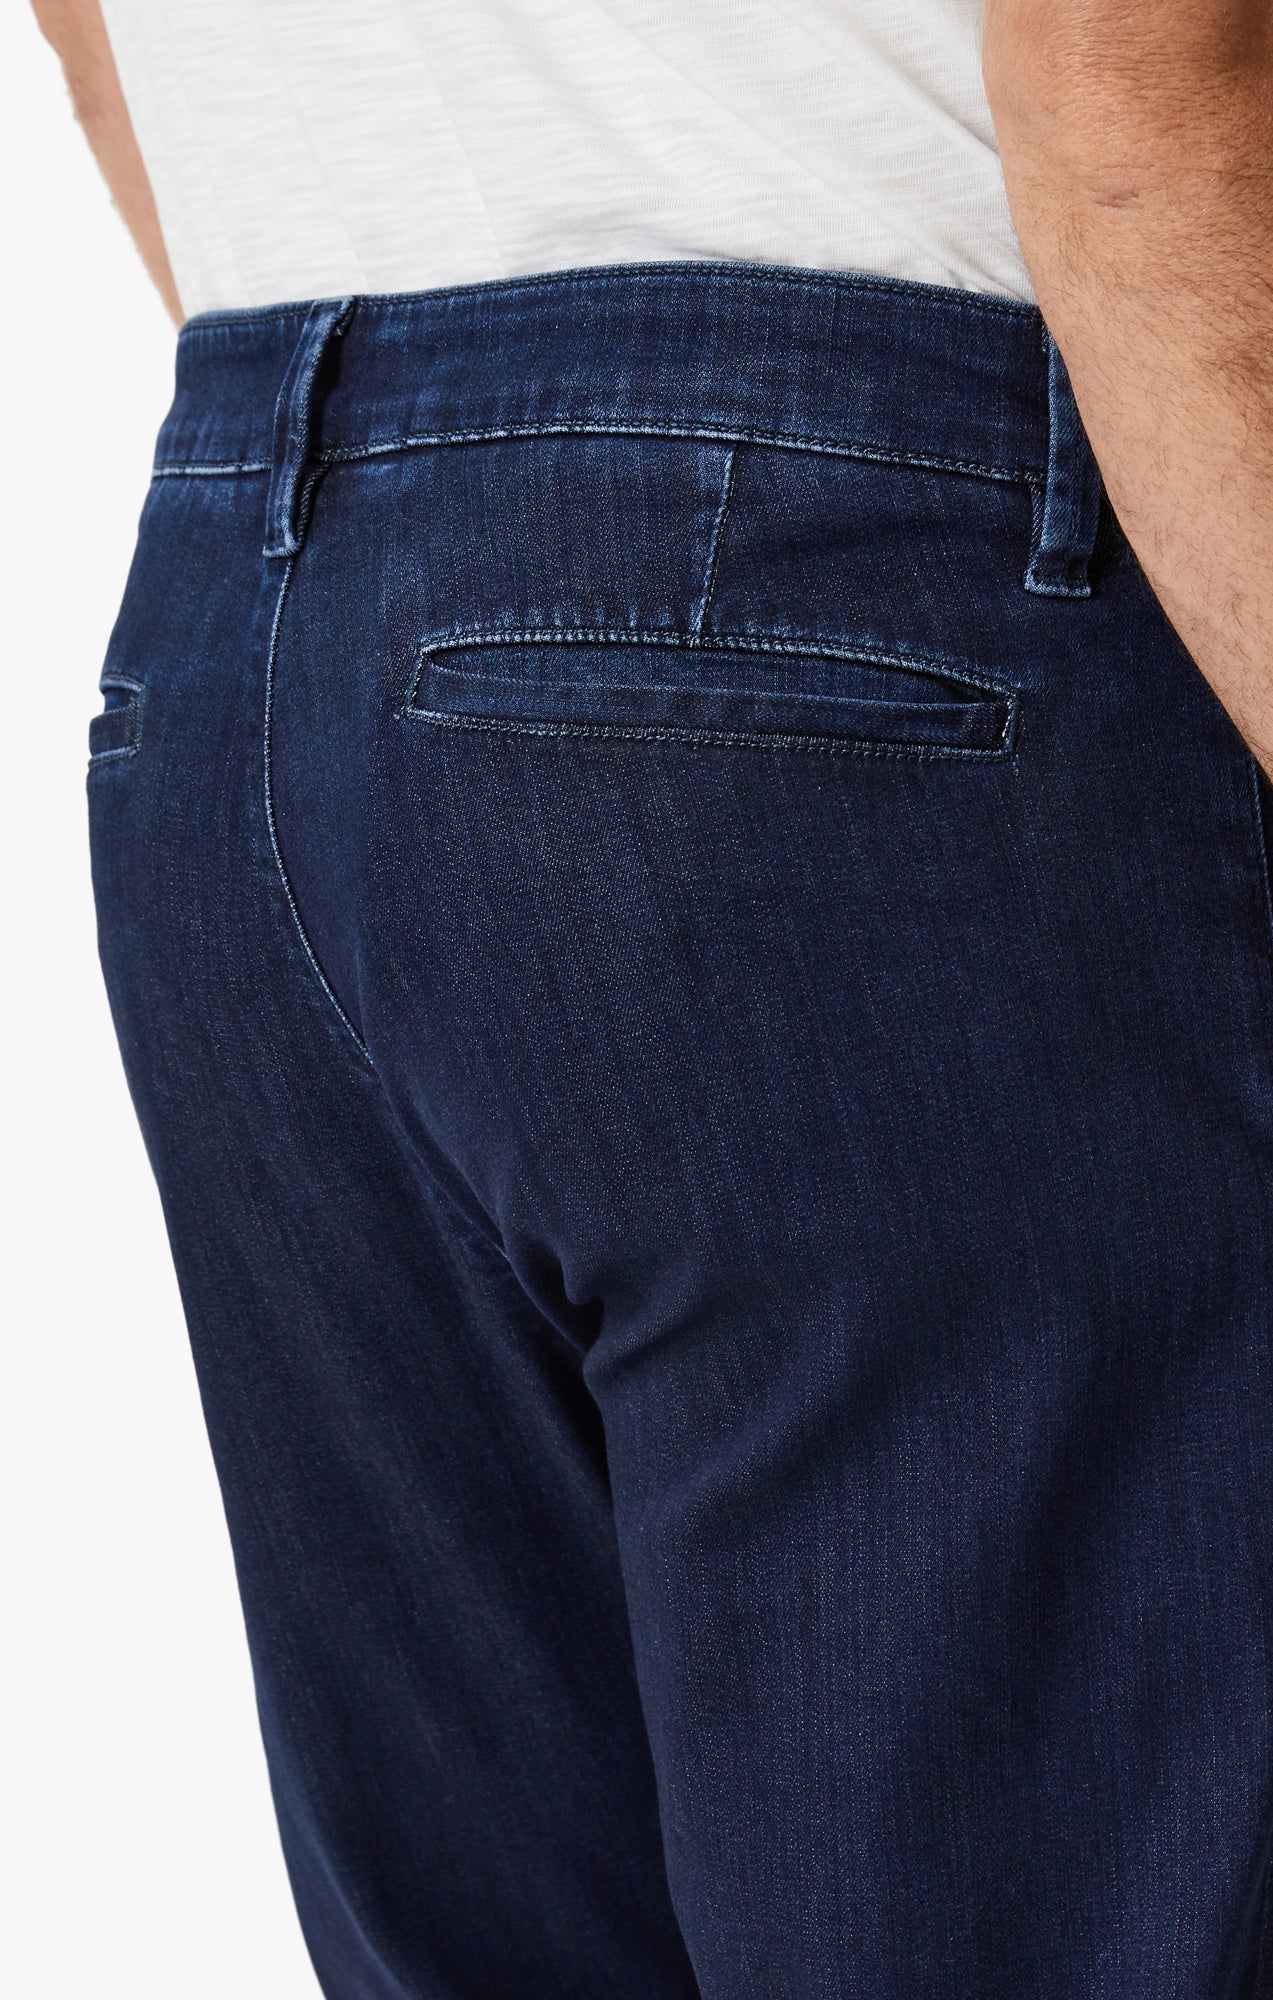 Verona Slim Leg Chino Jeans In Dark Brushed Refined